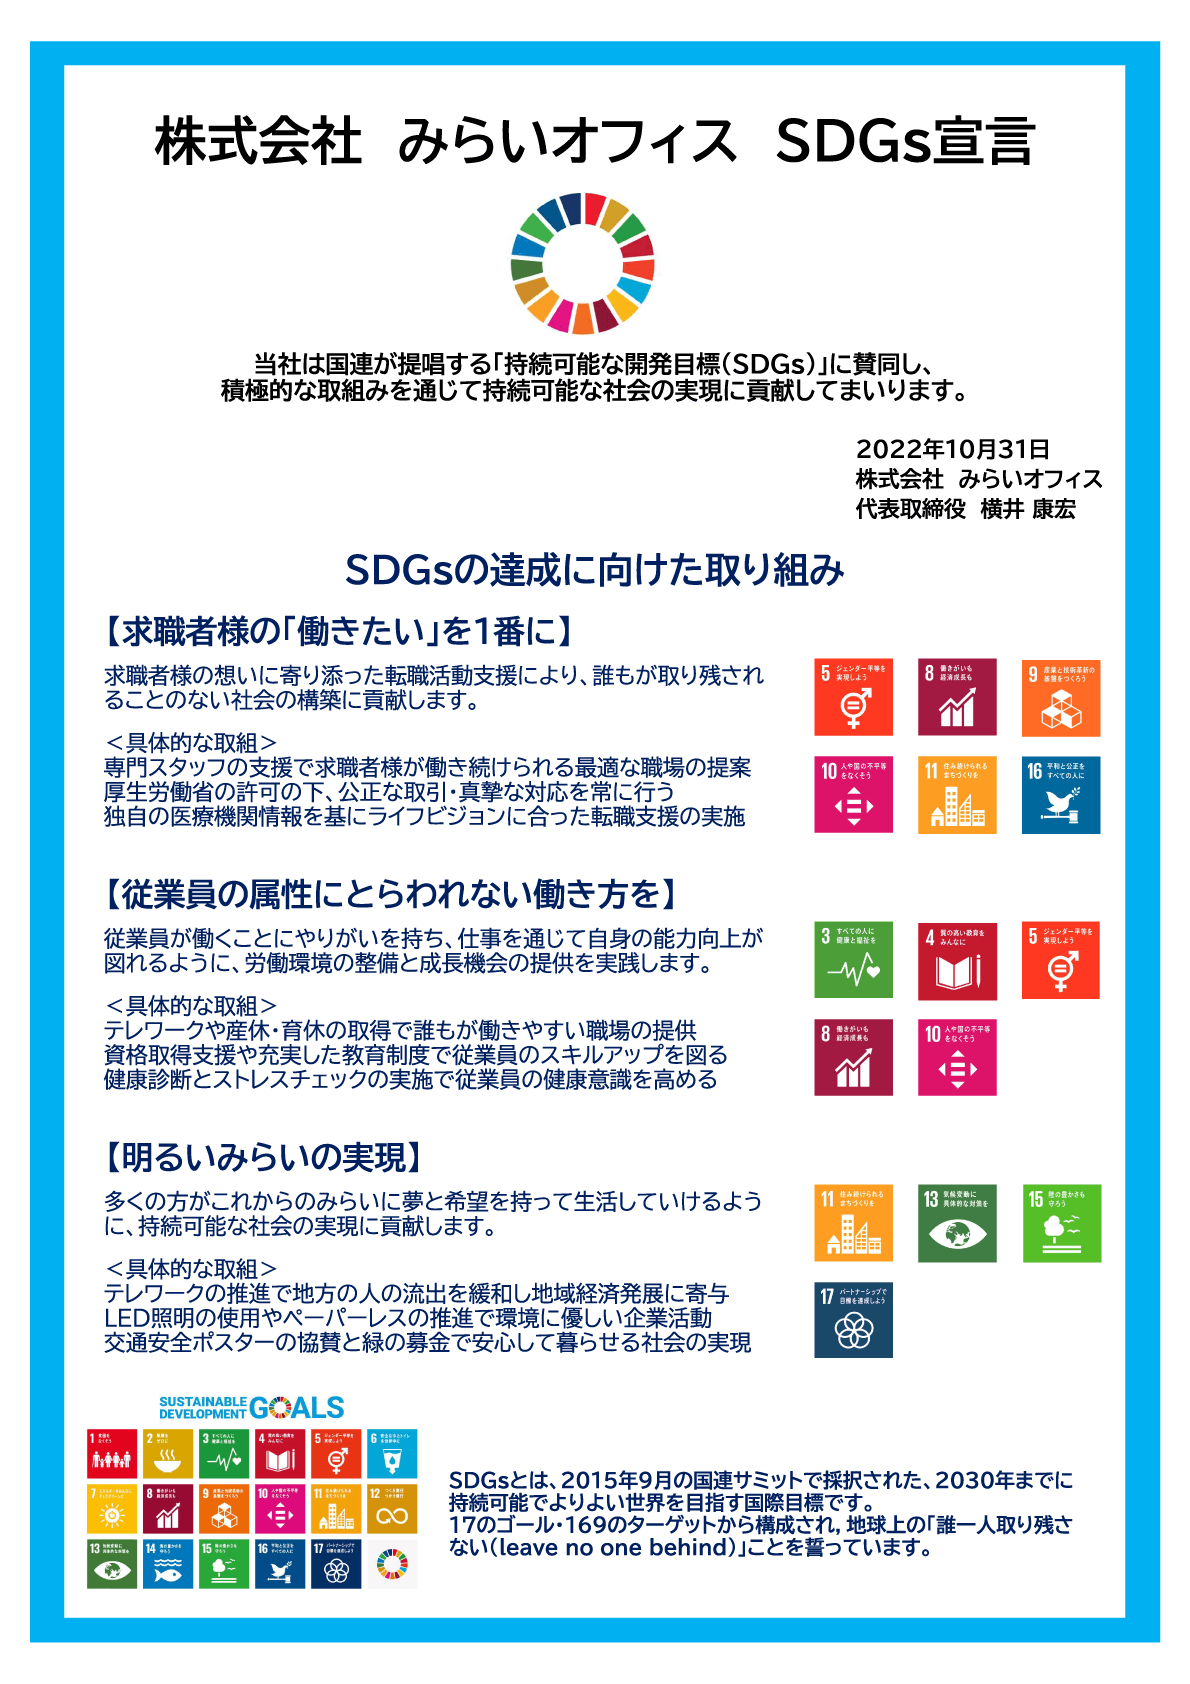 株式会社みらいオフィス SDGs宣言